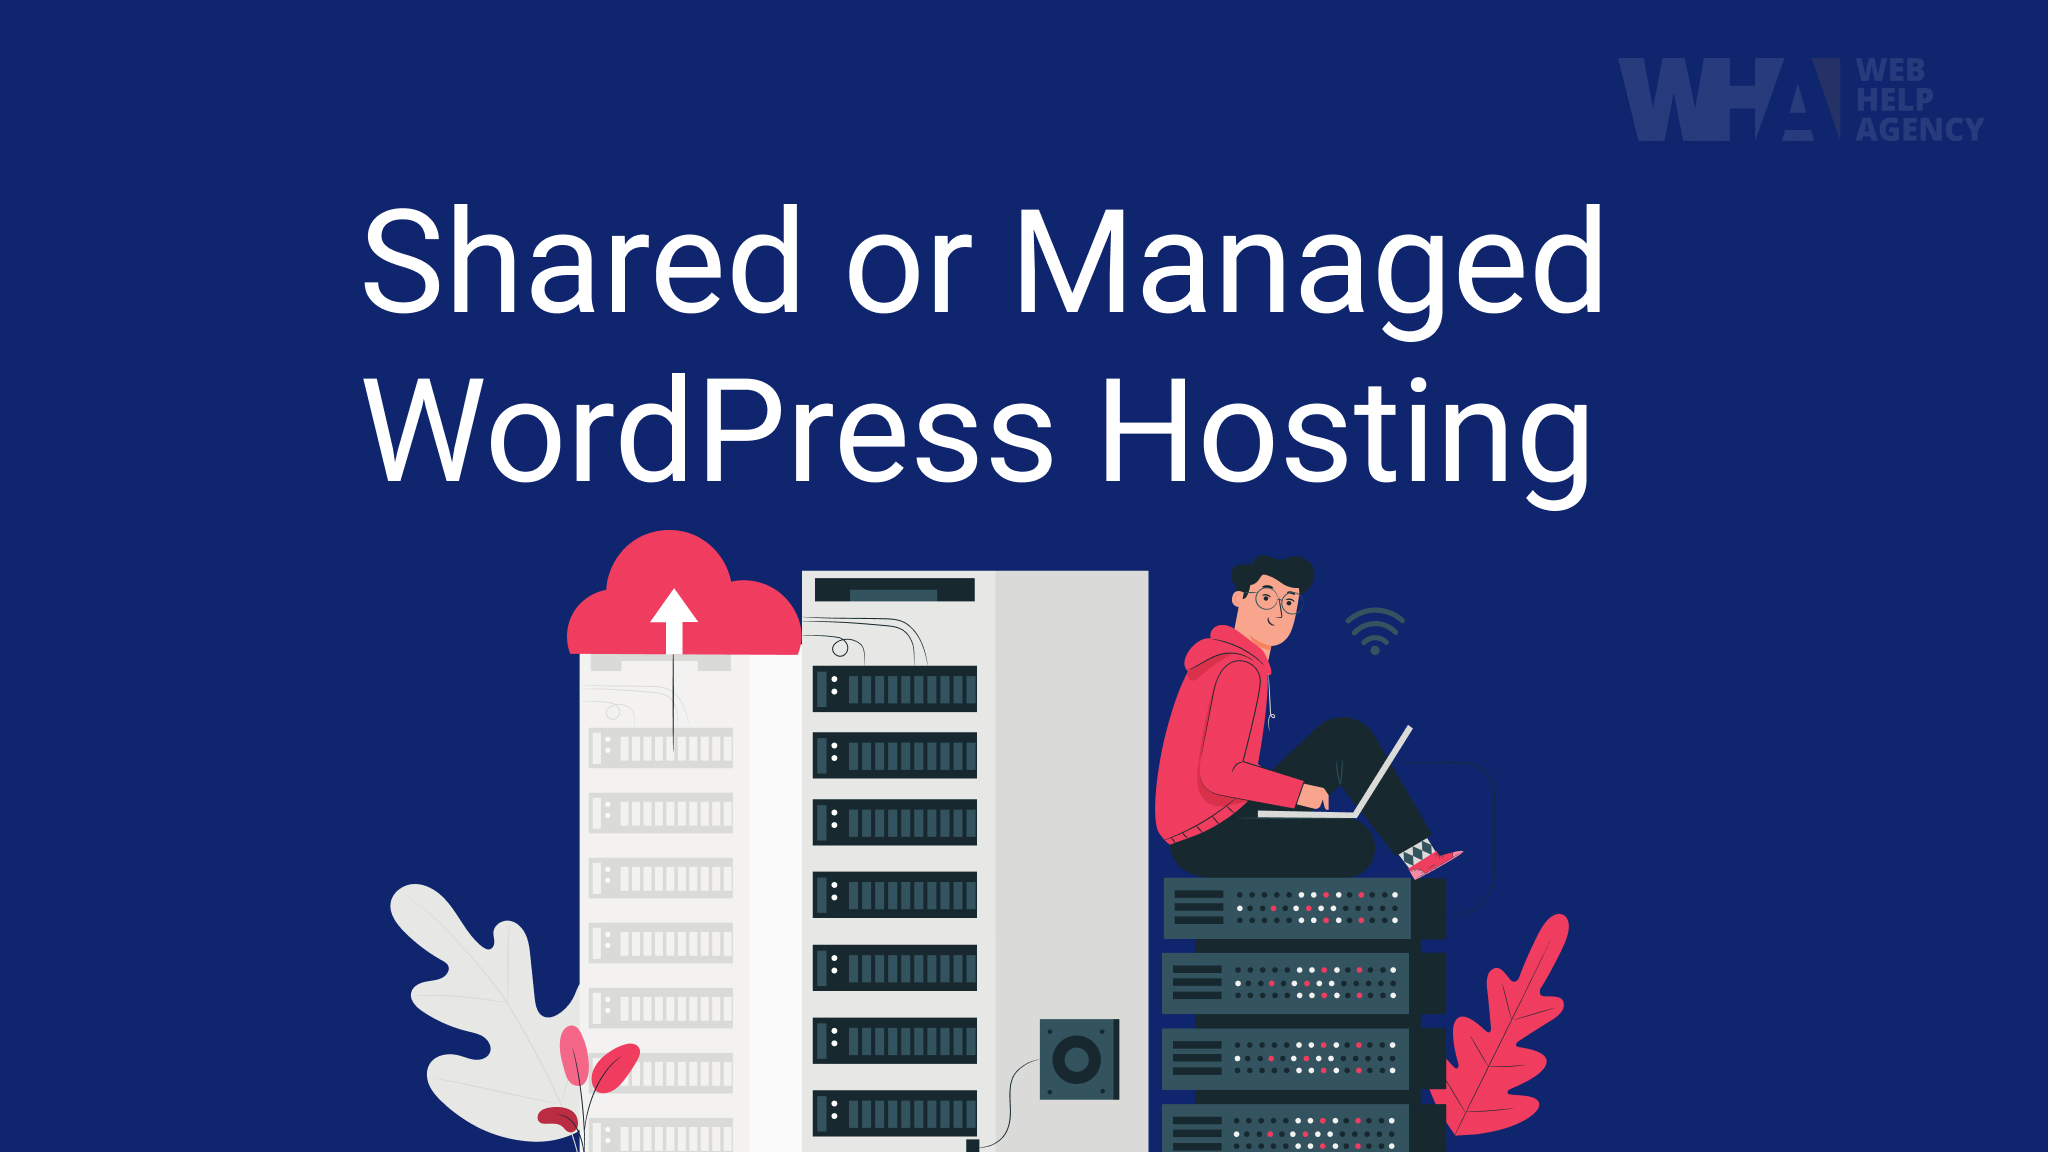 shared hosting versus managed hosting